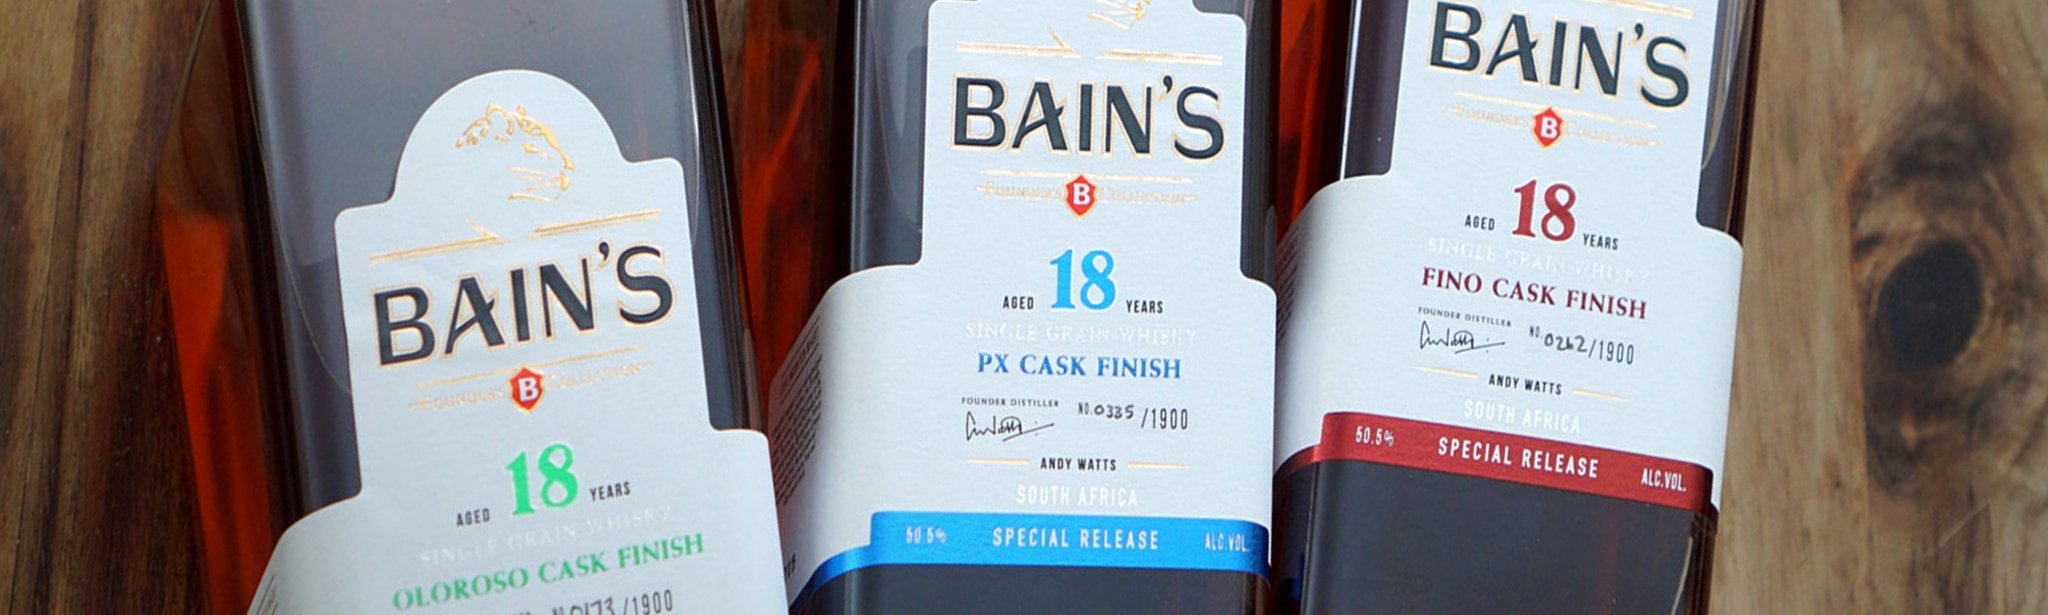 Bain's - The Bottle Club